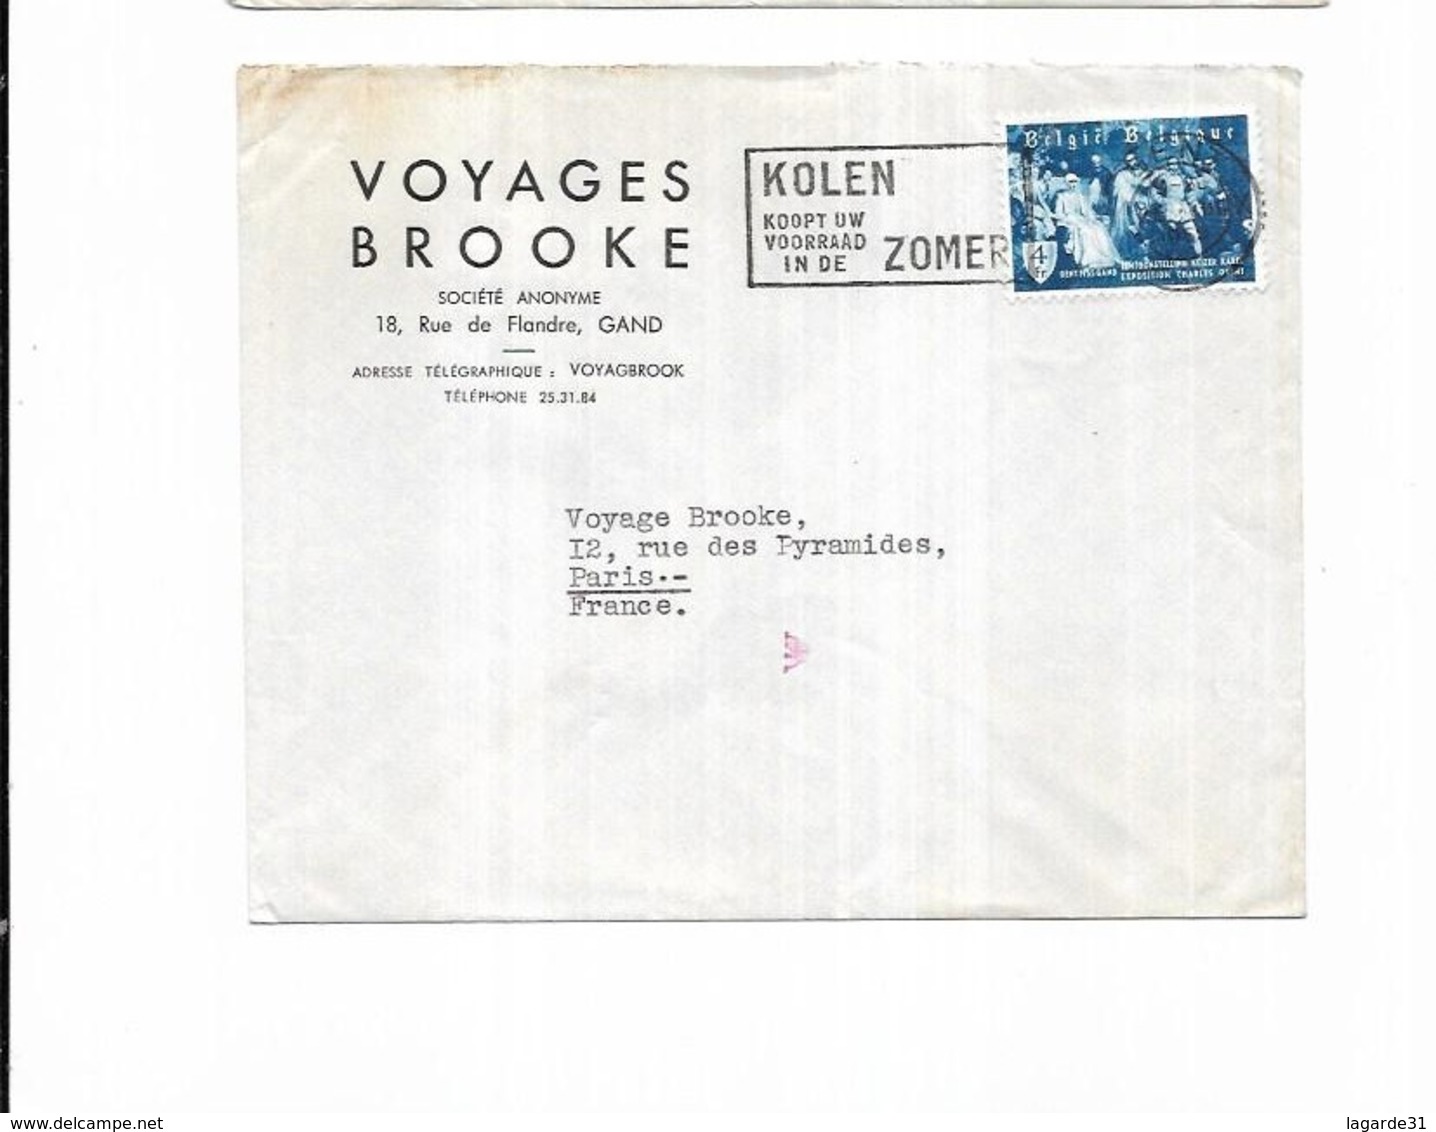 1955 Belgique Voyages Brooke Gand KOLEN KOOPT UW VOORRAAD IN DE ZOMER - Flammes